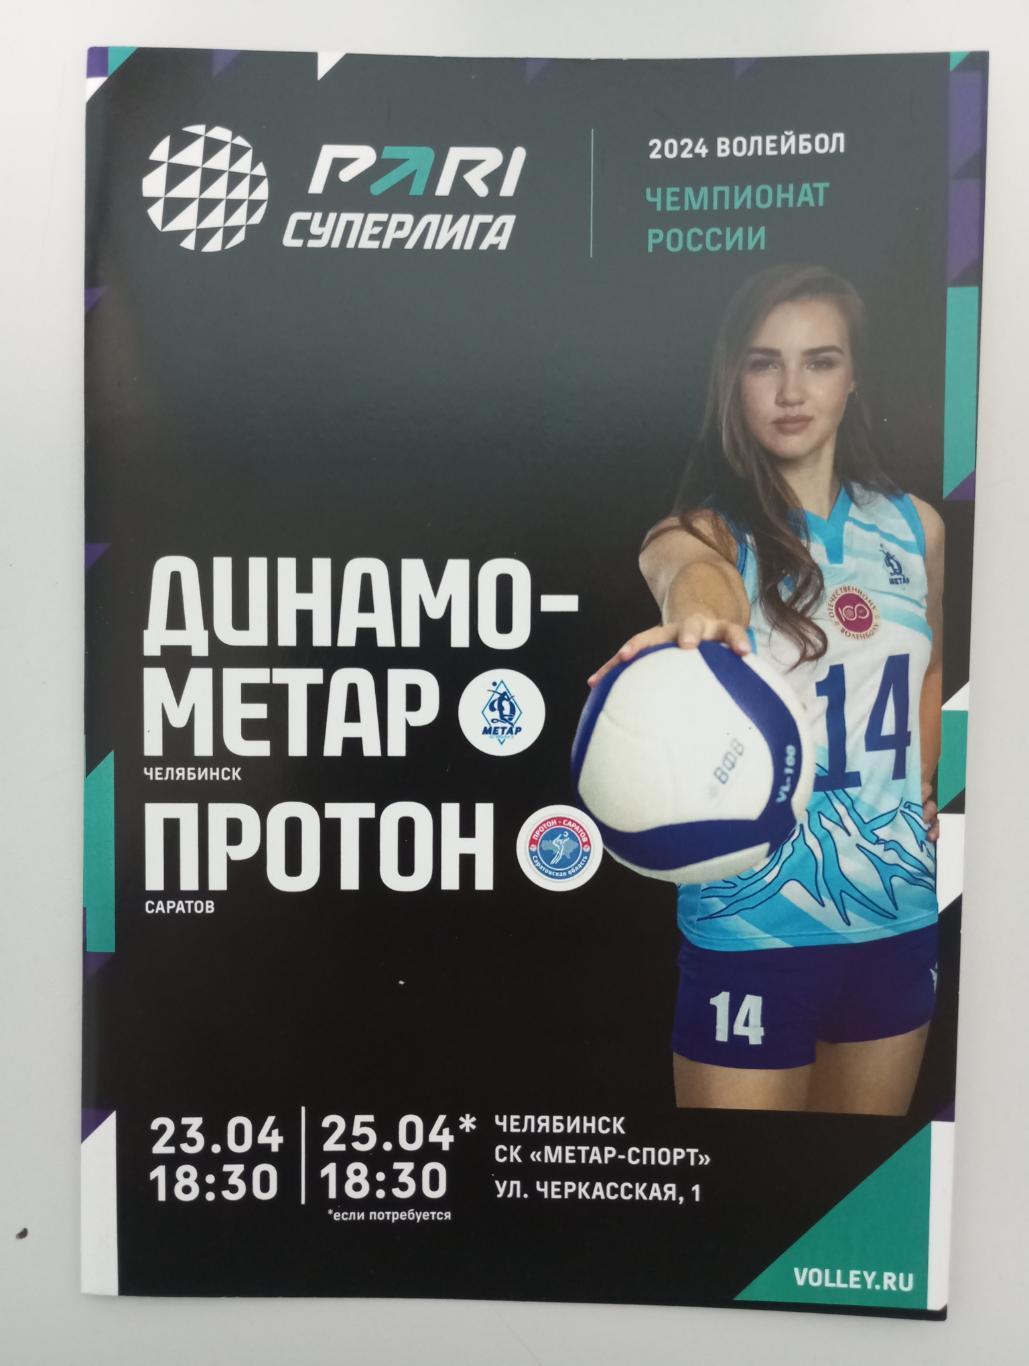 Динамо - Метар Челябинск - Протон Саратов плей-офф 2023/2024 год